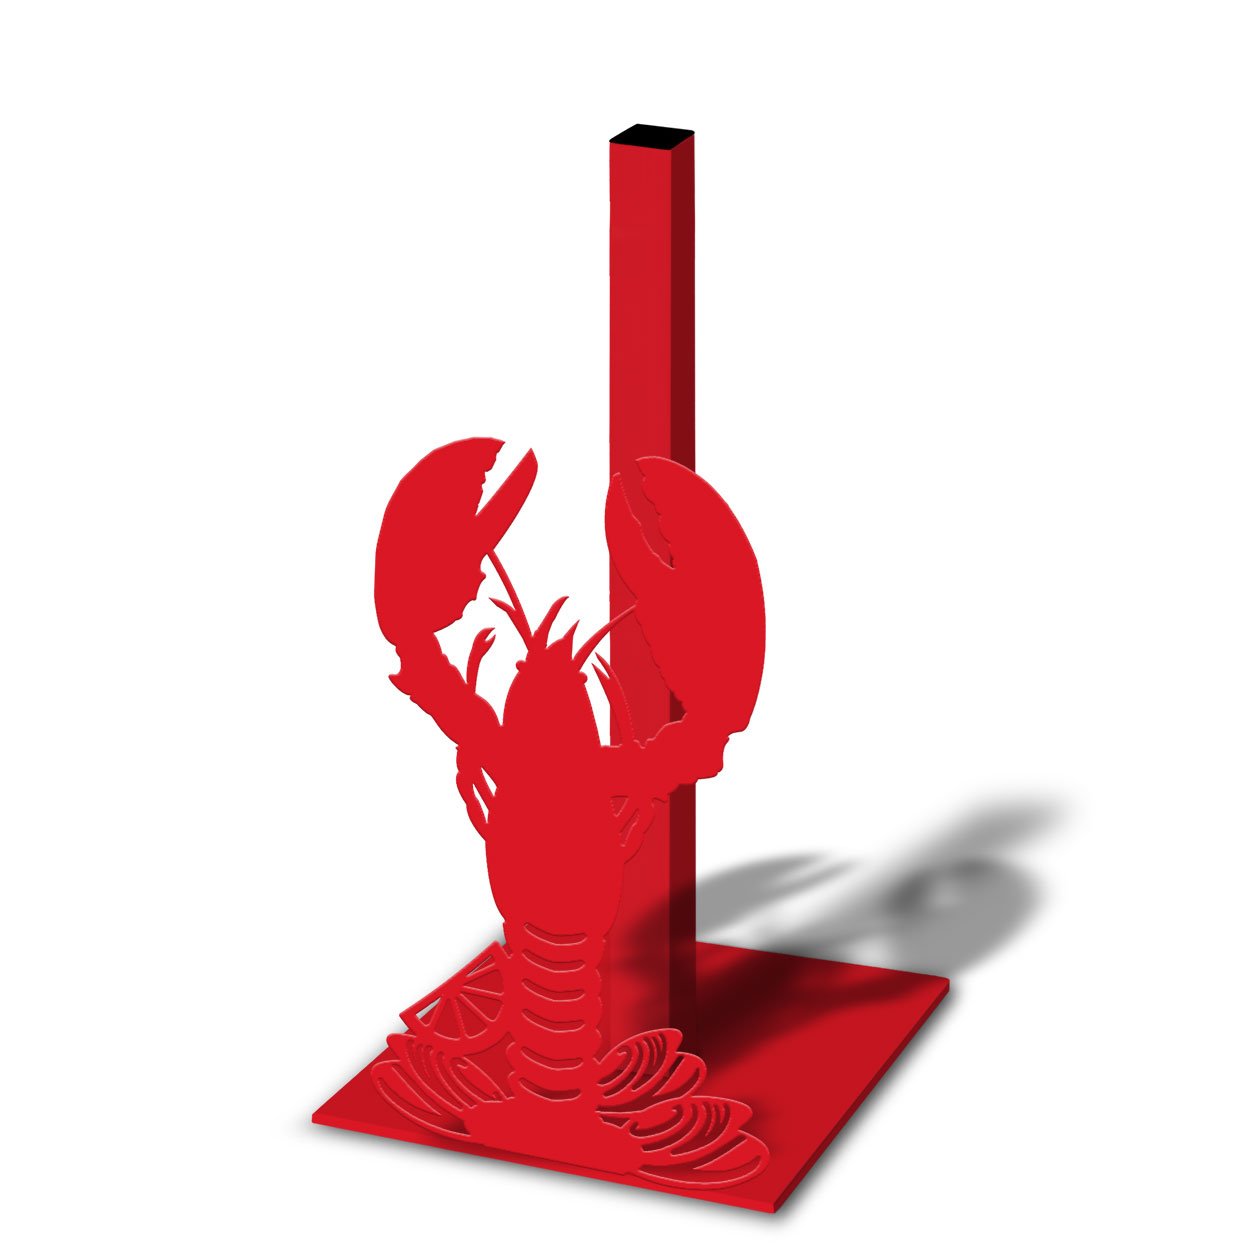 621057 - Lobster Design Paper Towel Holder - Choose Color